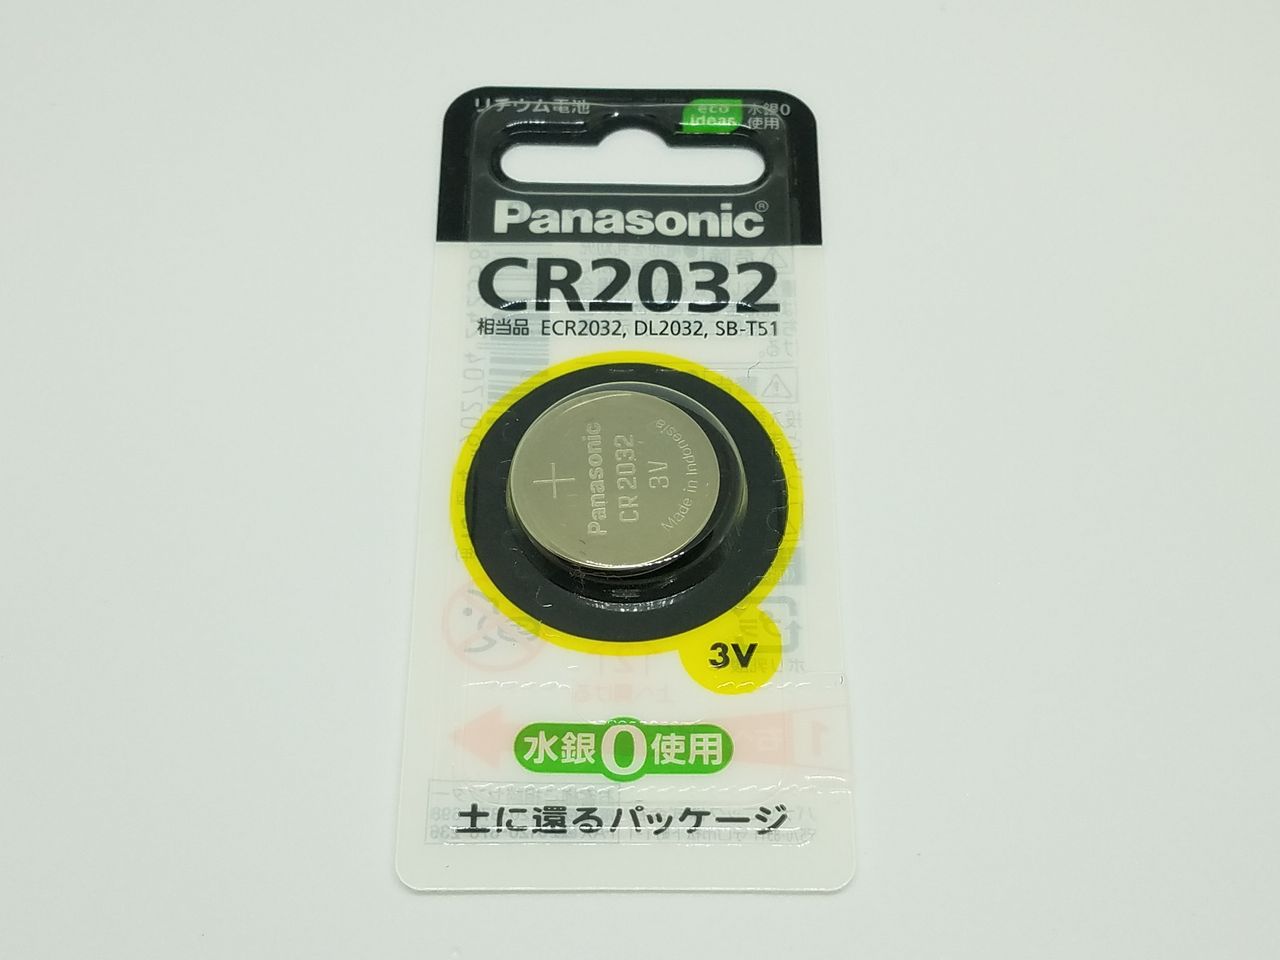 ポケモンgo Plus の電池寿命について Represent 文京区